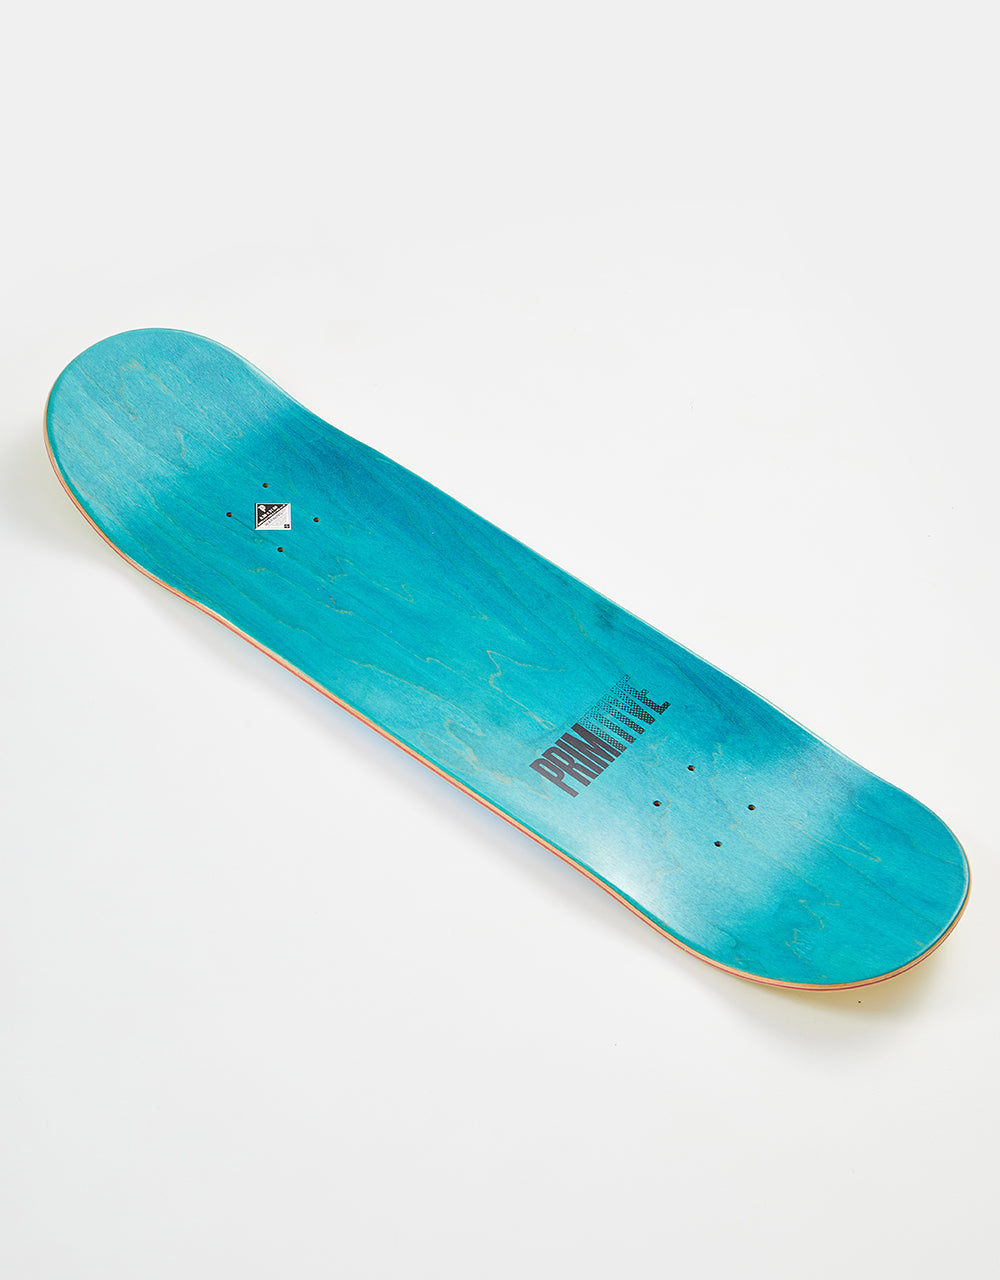 Primitive Desarmo Vision Skateboard Deck - 8.38"